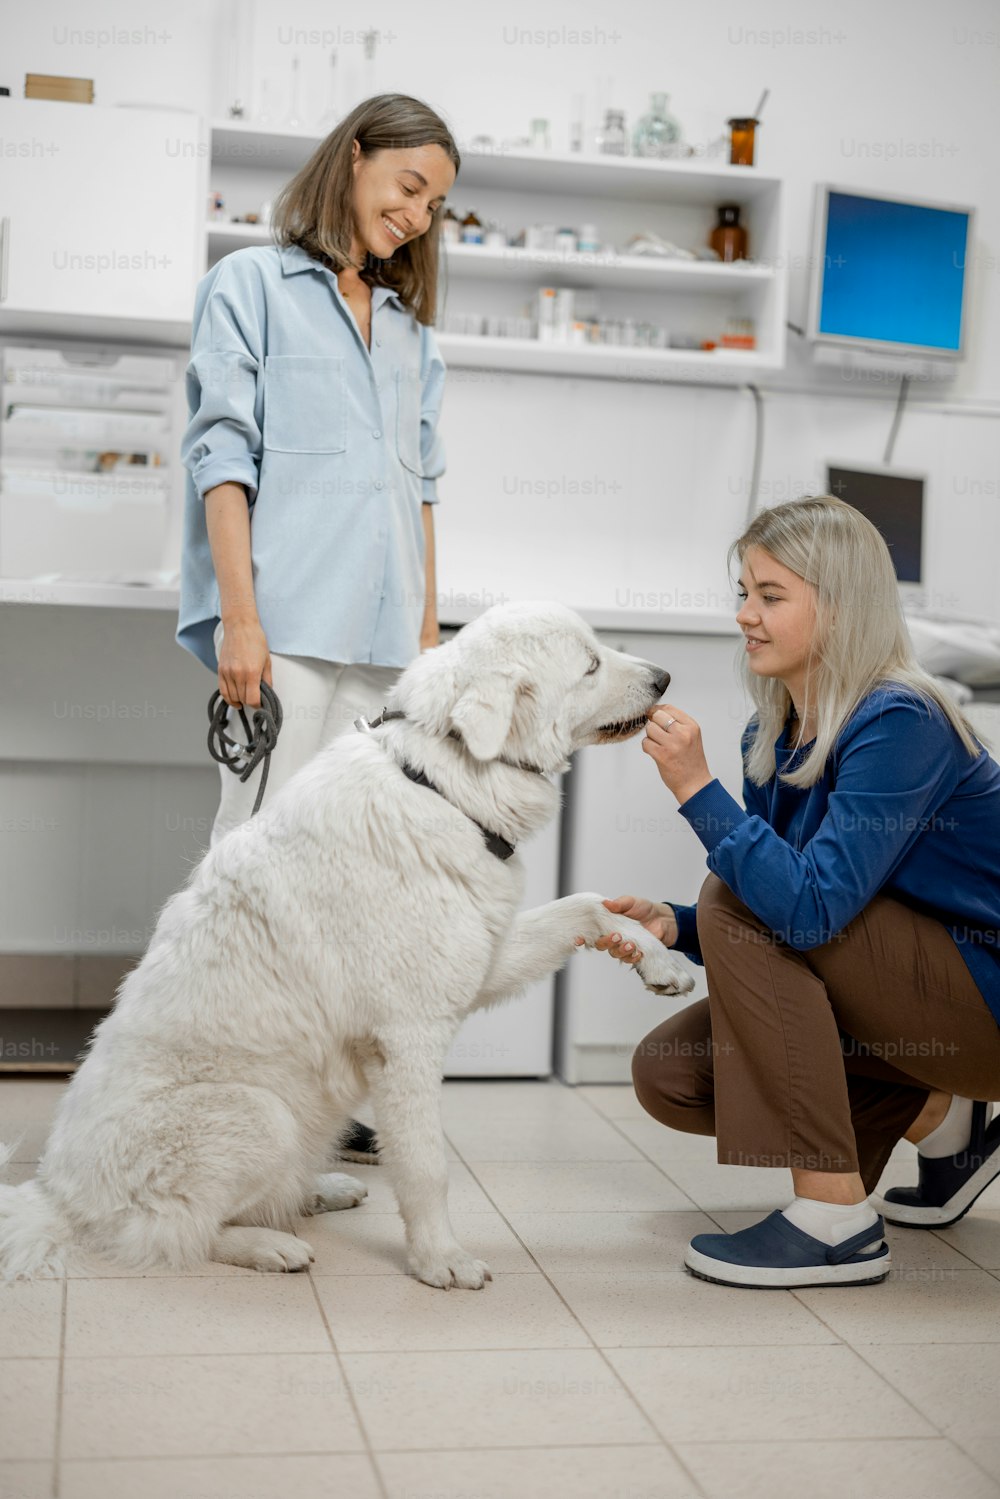 Une femme médecin vétérinaire s’accroupit devant le gros chien blanc et lui donne une friandise. Le chien donne une patte. La jeune propriétaire s’attache derrière le chien.